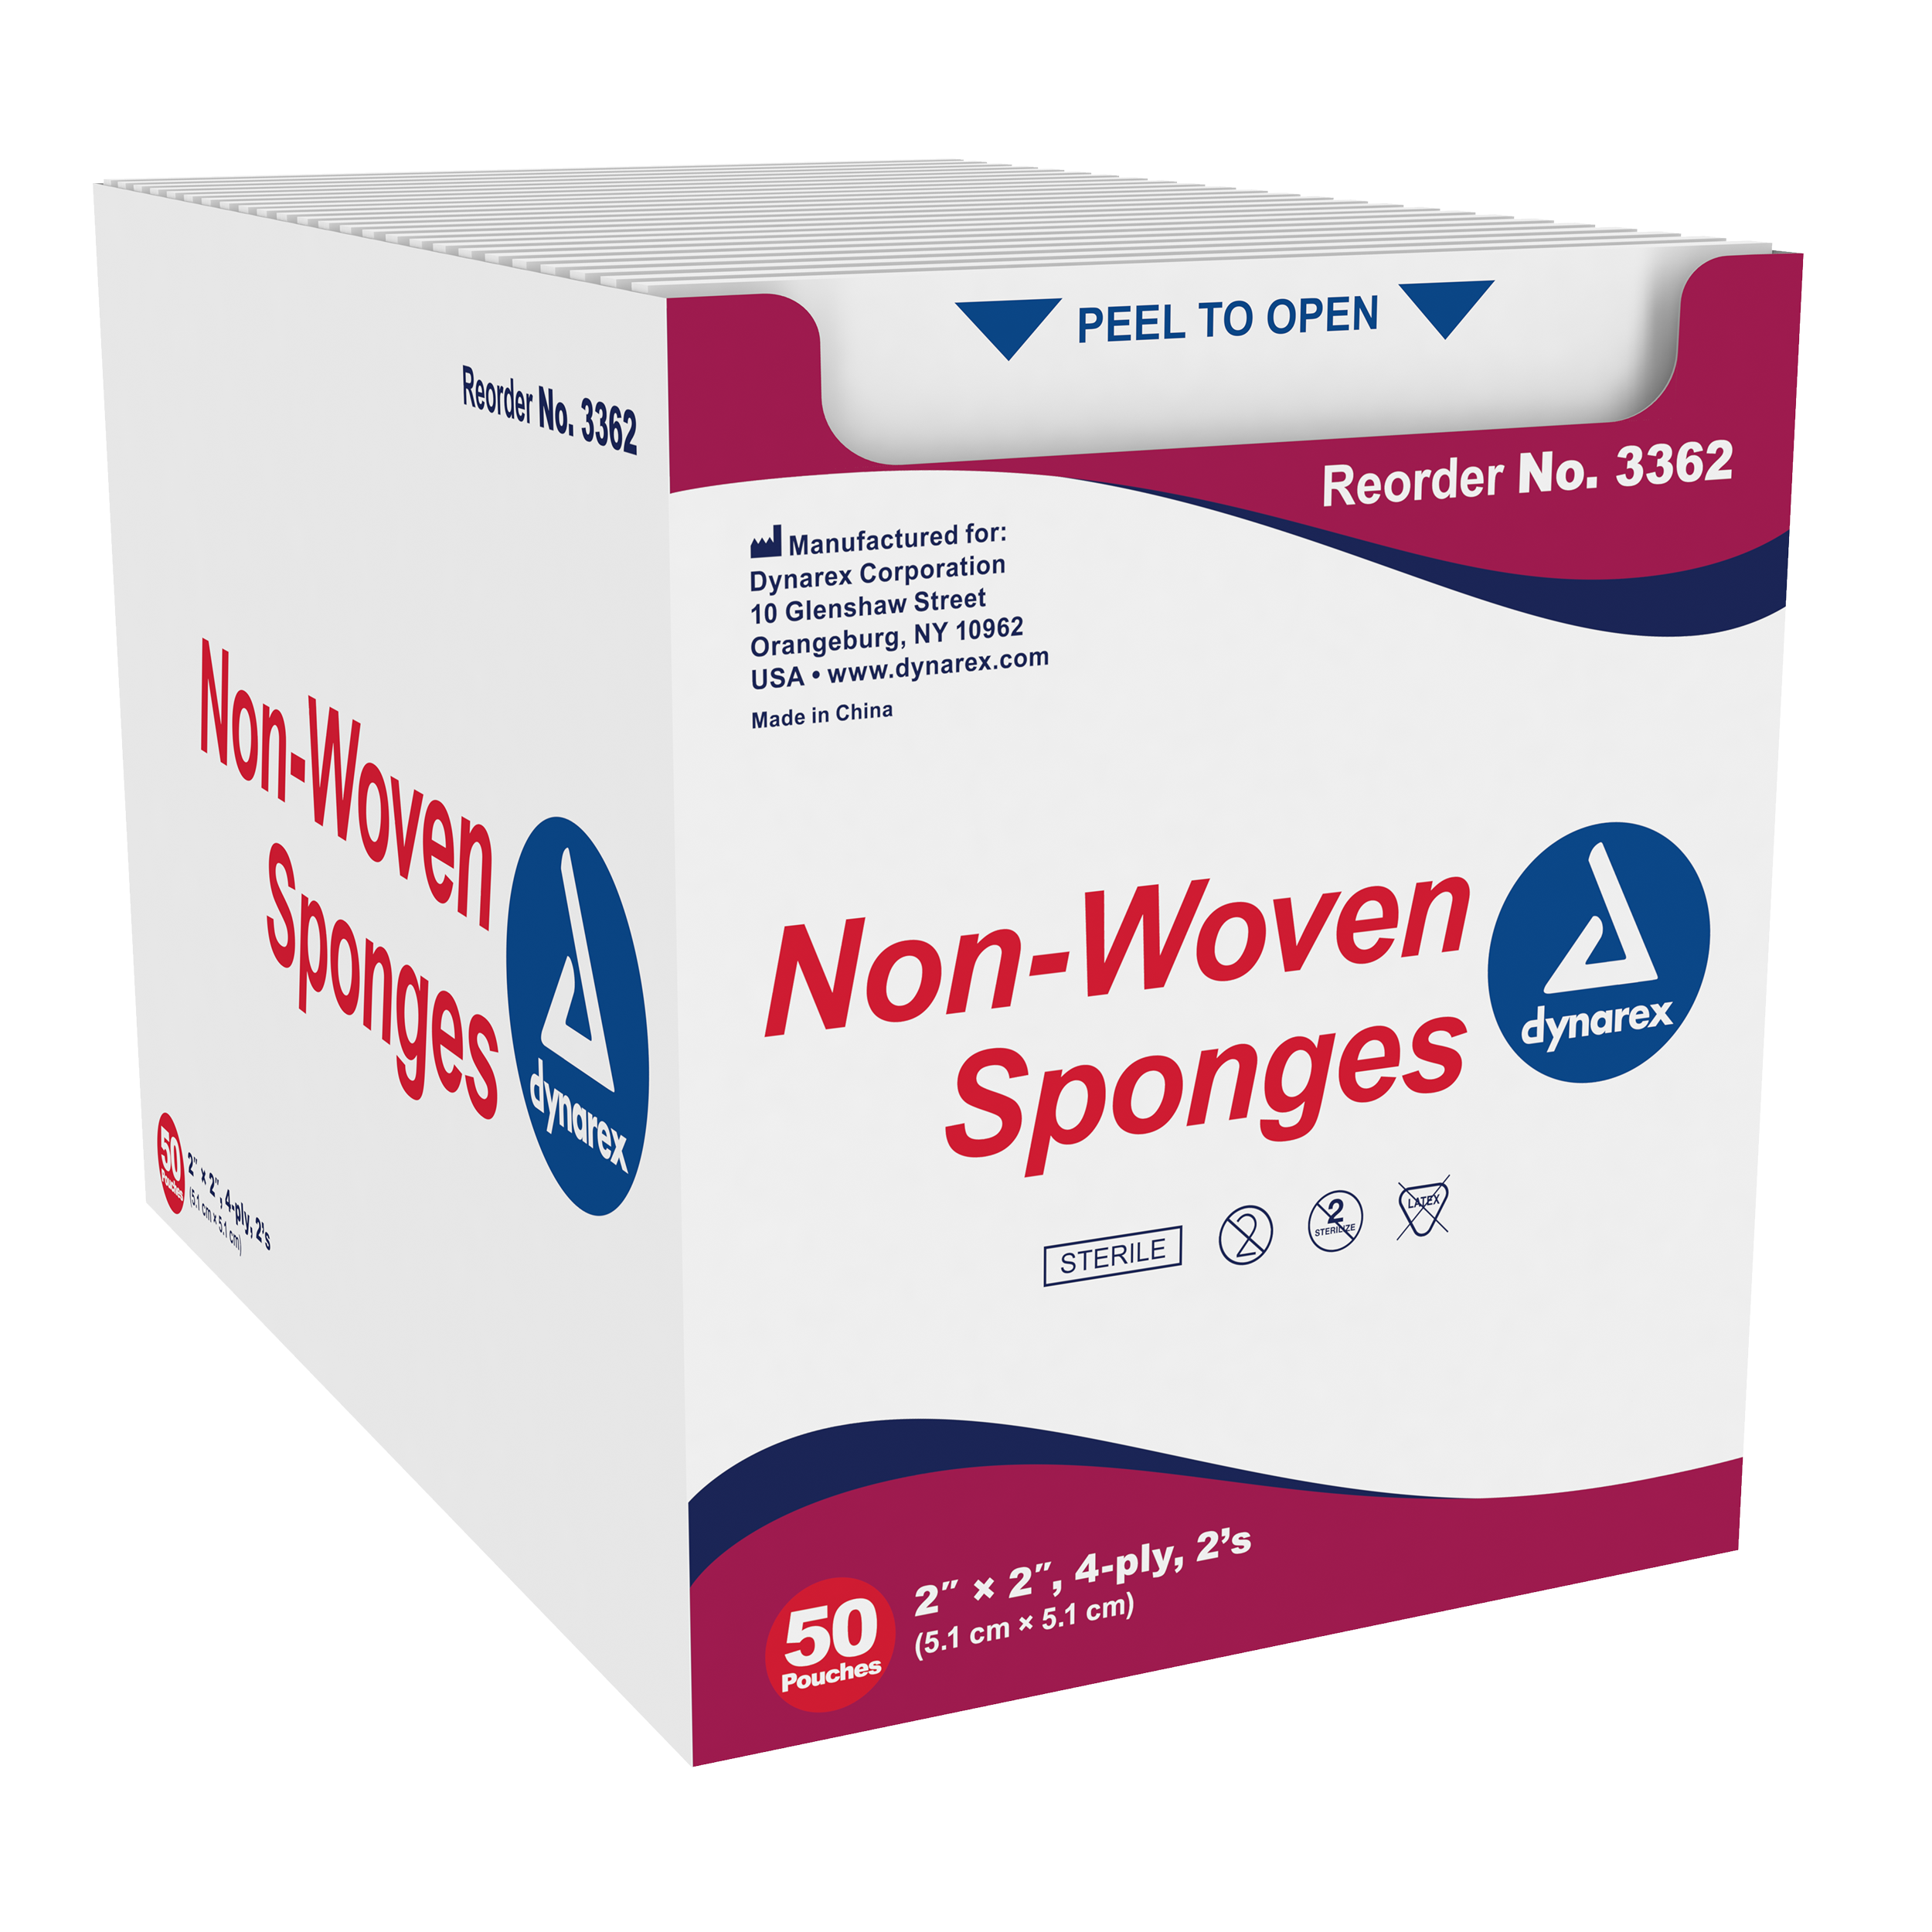 Non-Woven Sponge Sterile 2%27s, 2